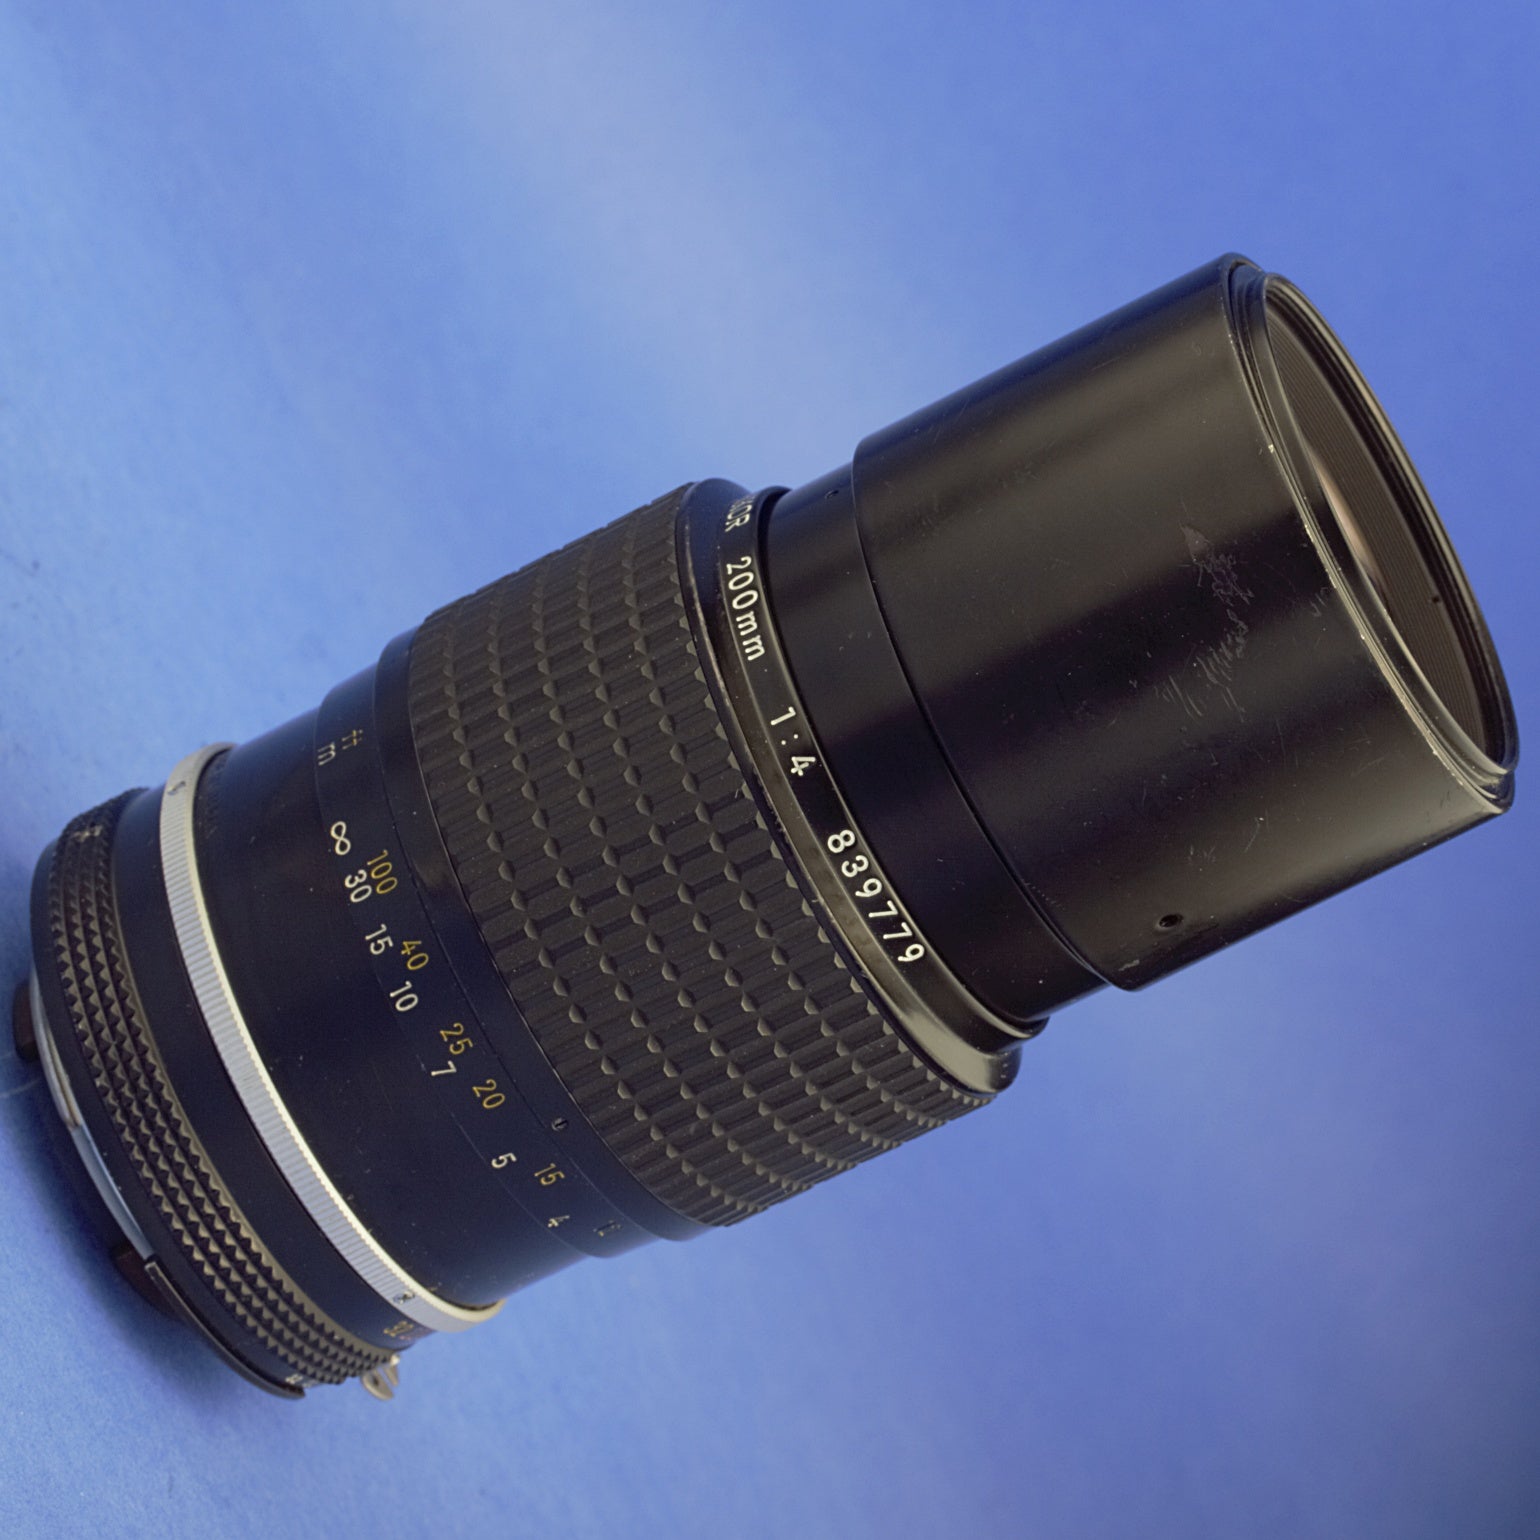 Nikon Nikkor 200mm F4 Ai Lens